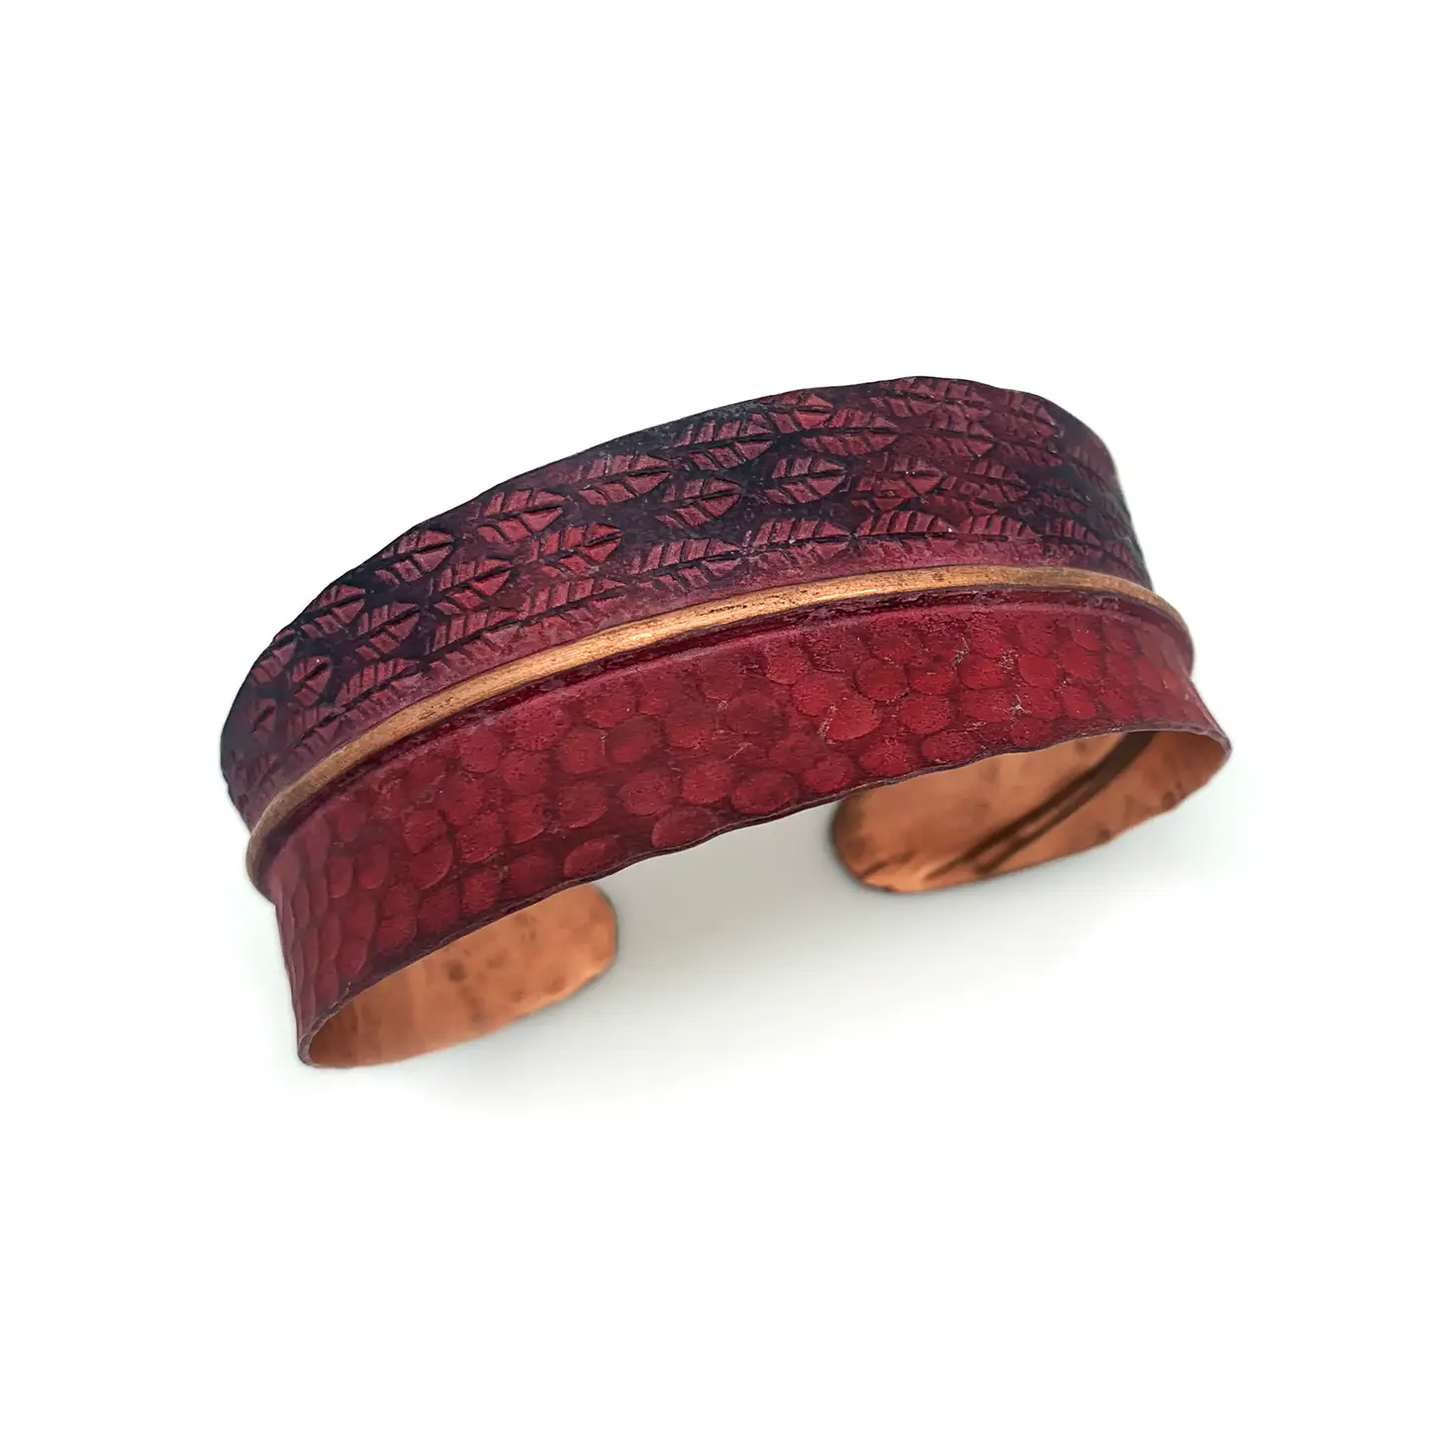 Copper Patina Cuff Bracelet